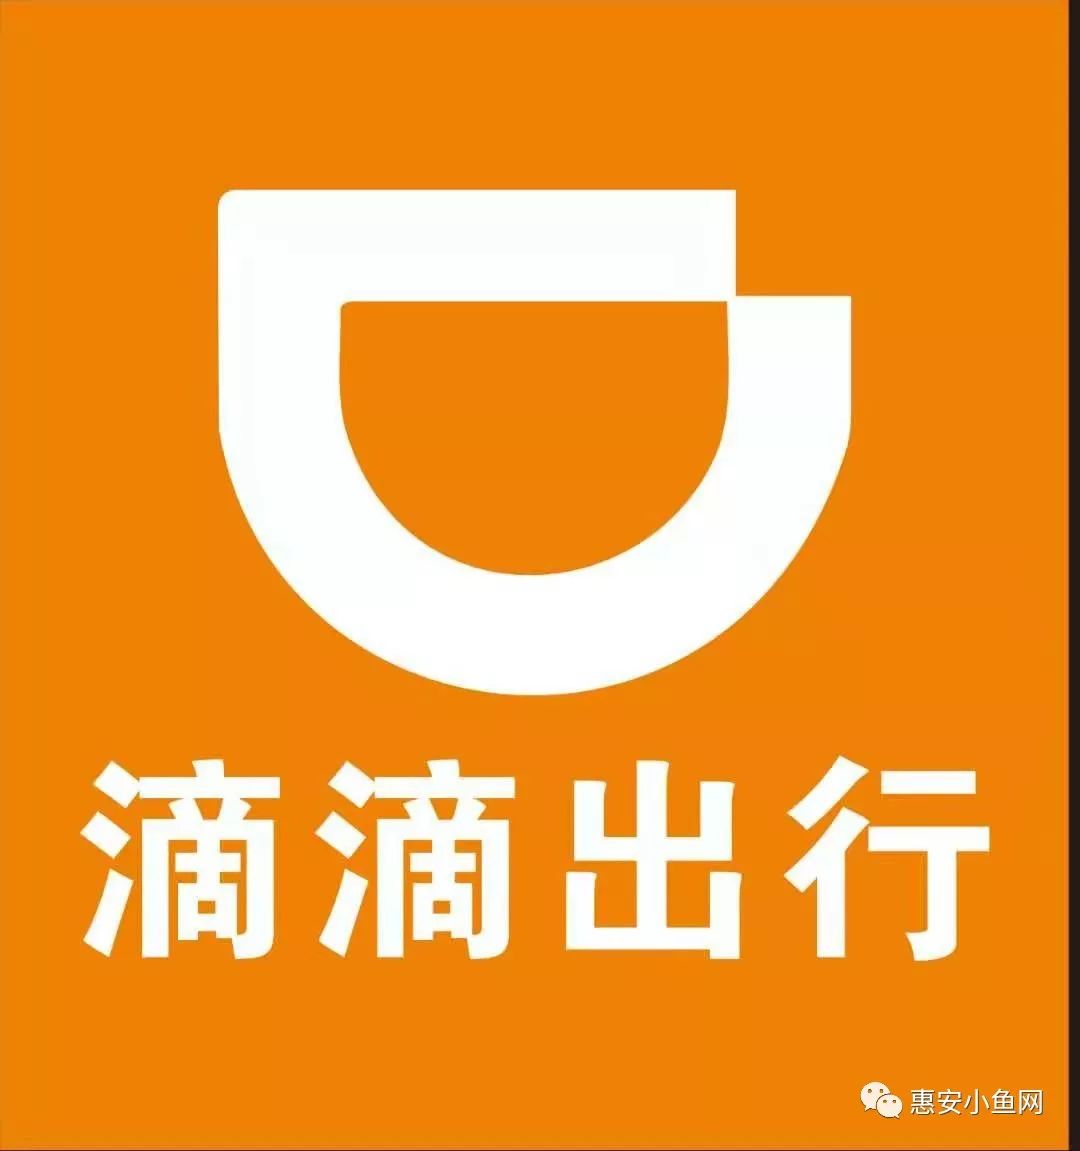 滴滴出行标志logo图片-诗宸标志设计